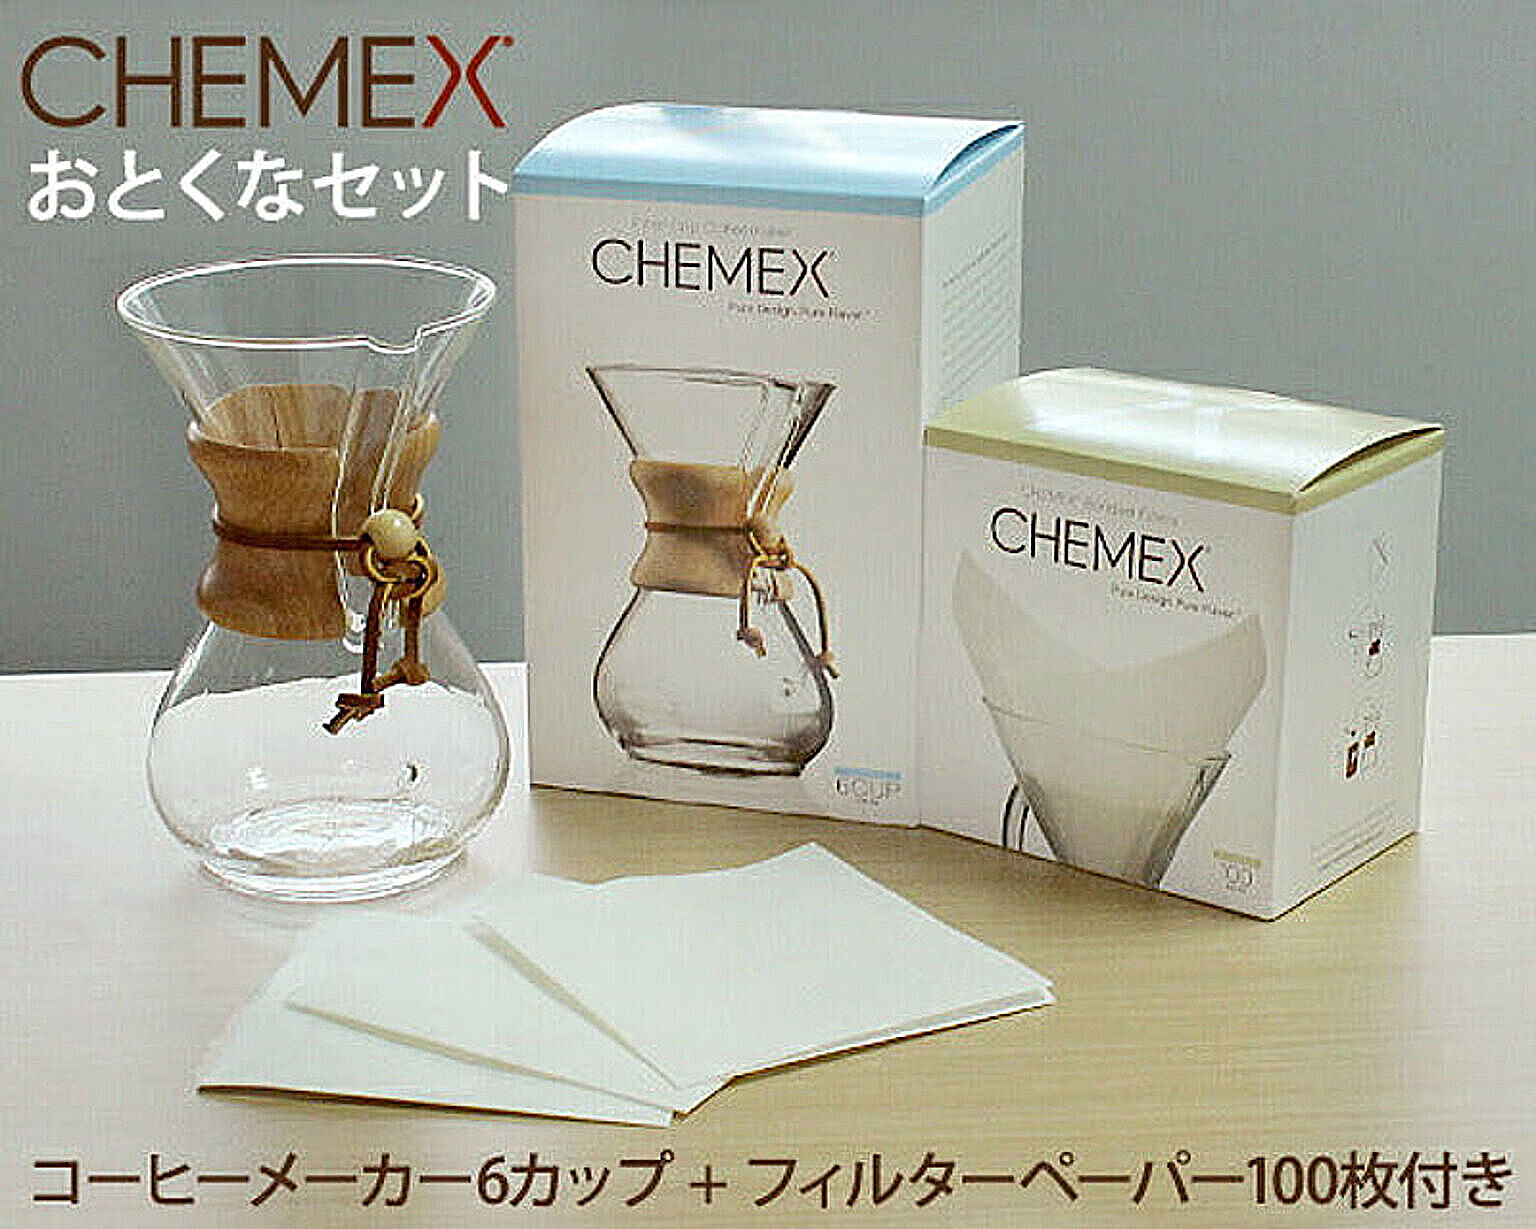 ケメックス CHEMEX コーヒーメーカー 6カップ用 CM-6A 22cm + フィルターペーパー 6カップ用 FS-100 100枚入り